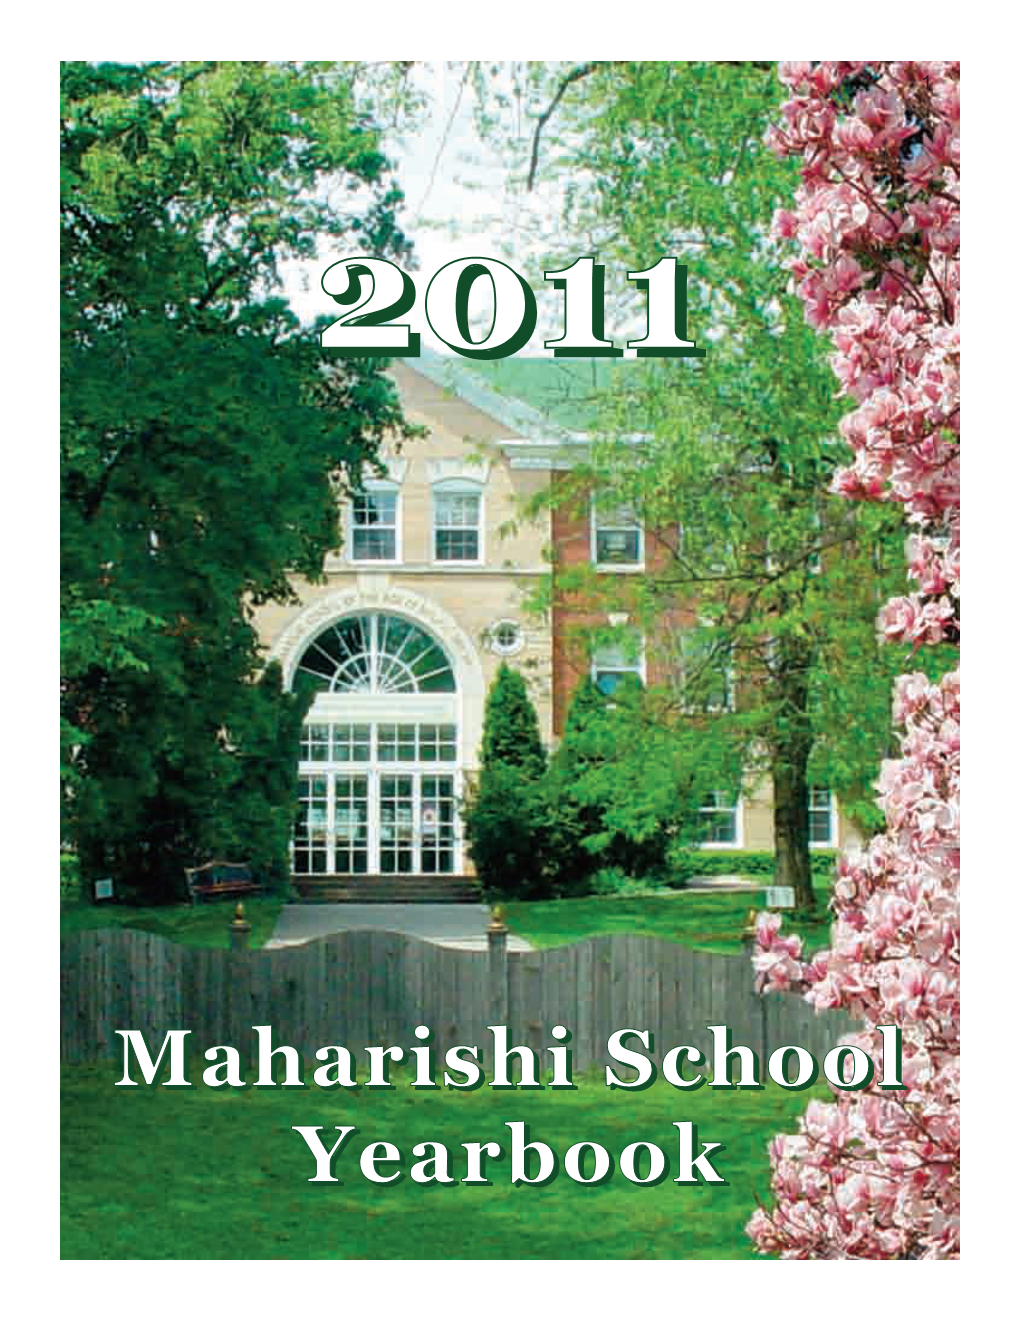 Maharishi School Yearbook